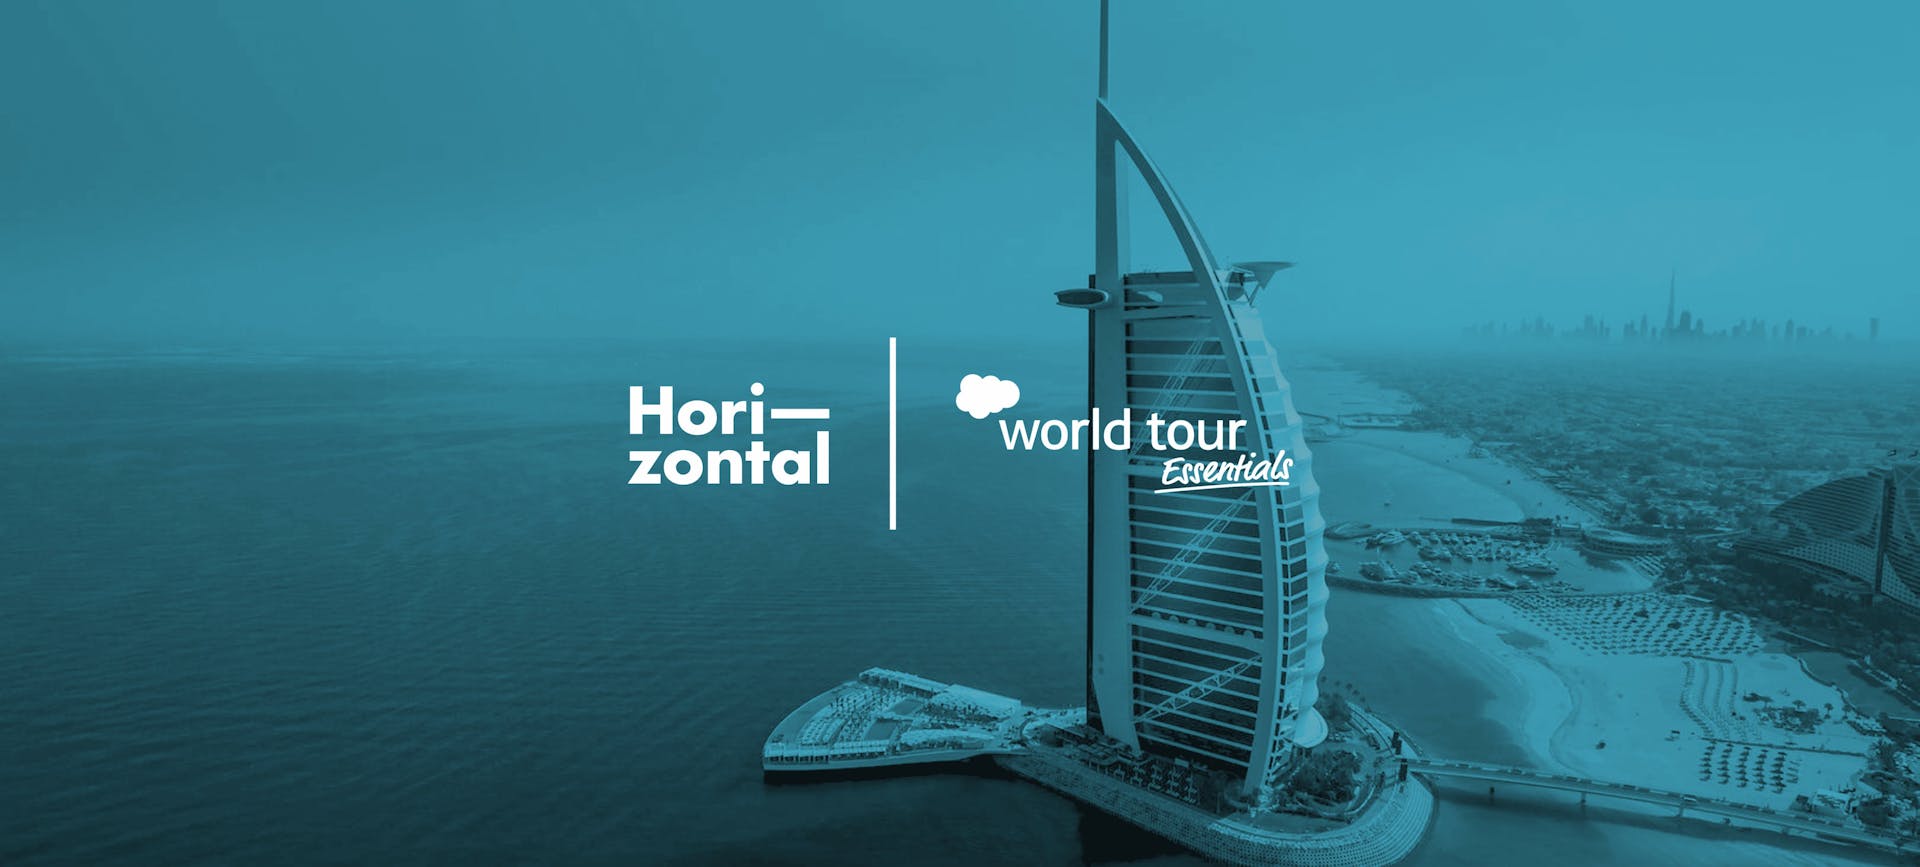 Horizontal Digital to bring AI to life as EMERALD Sponsor for Salesforce World Tour Essentials Dubai